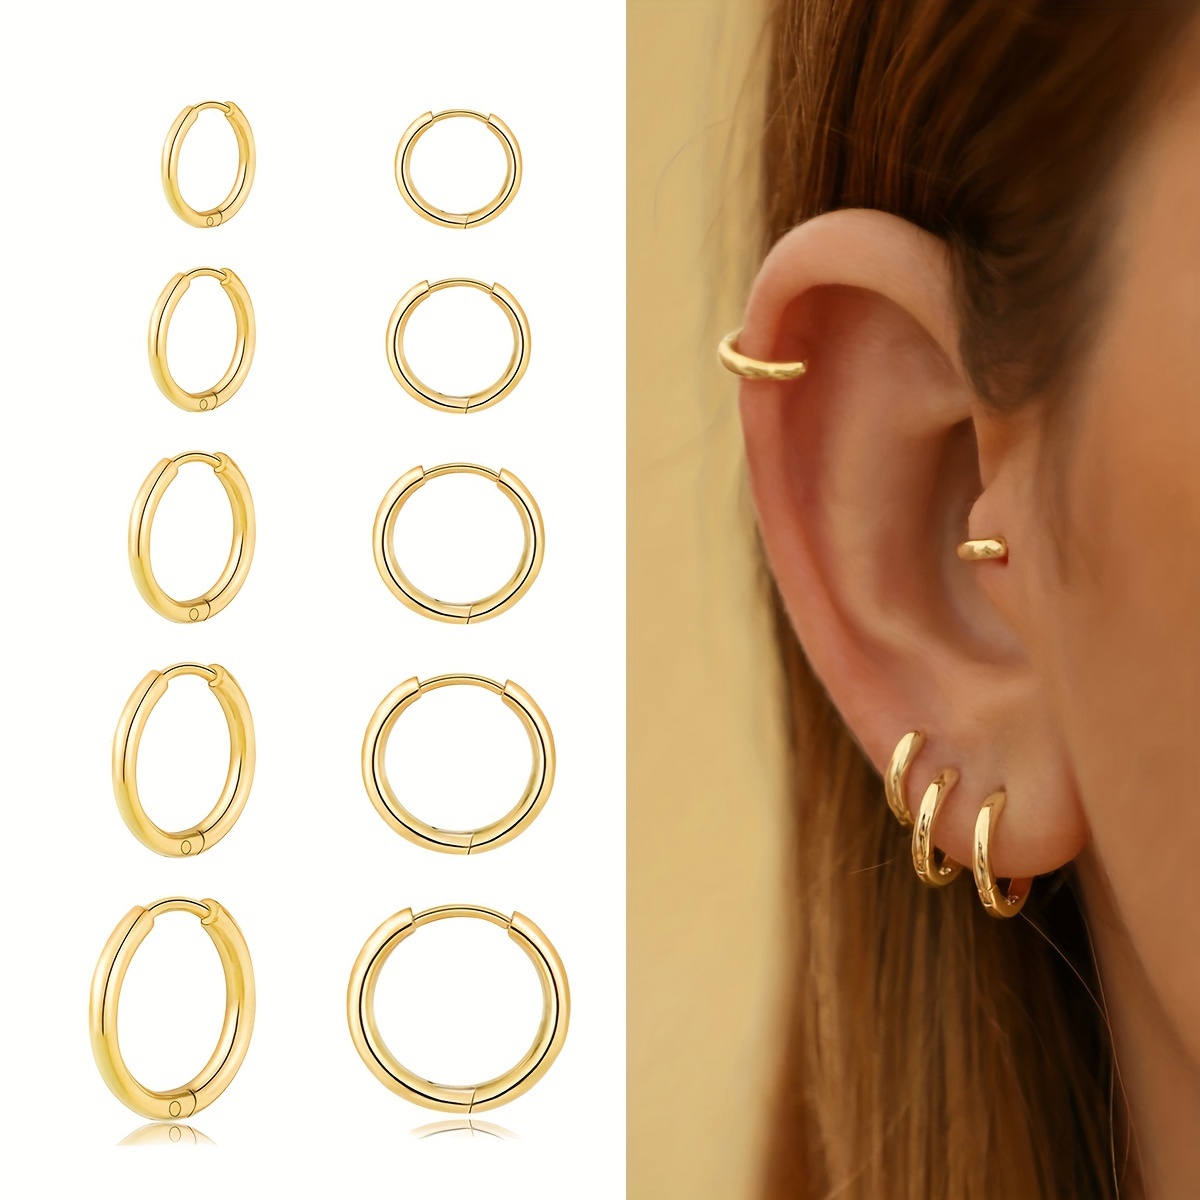 

Small Gold Hoop Earrings For Women Plated Huggie Hoop Earrings For Sensitive Ears Everyday Earrings For Cartilage Piercings Jewelry Set For Multiple Piercings 5 Pairs